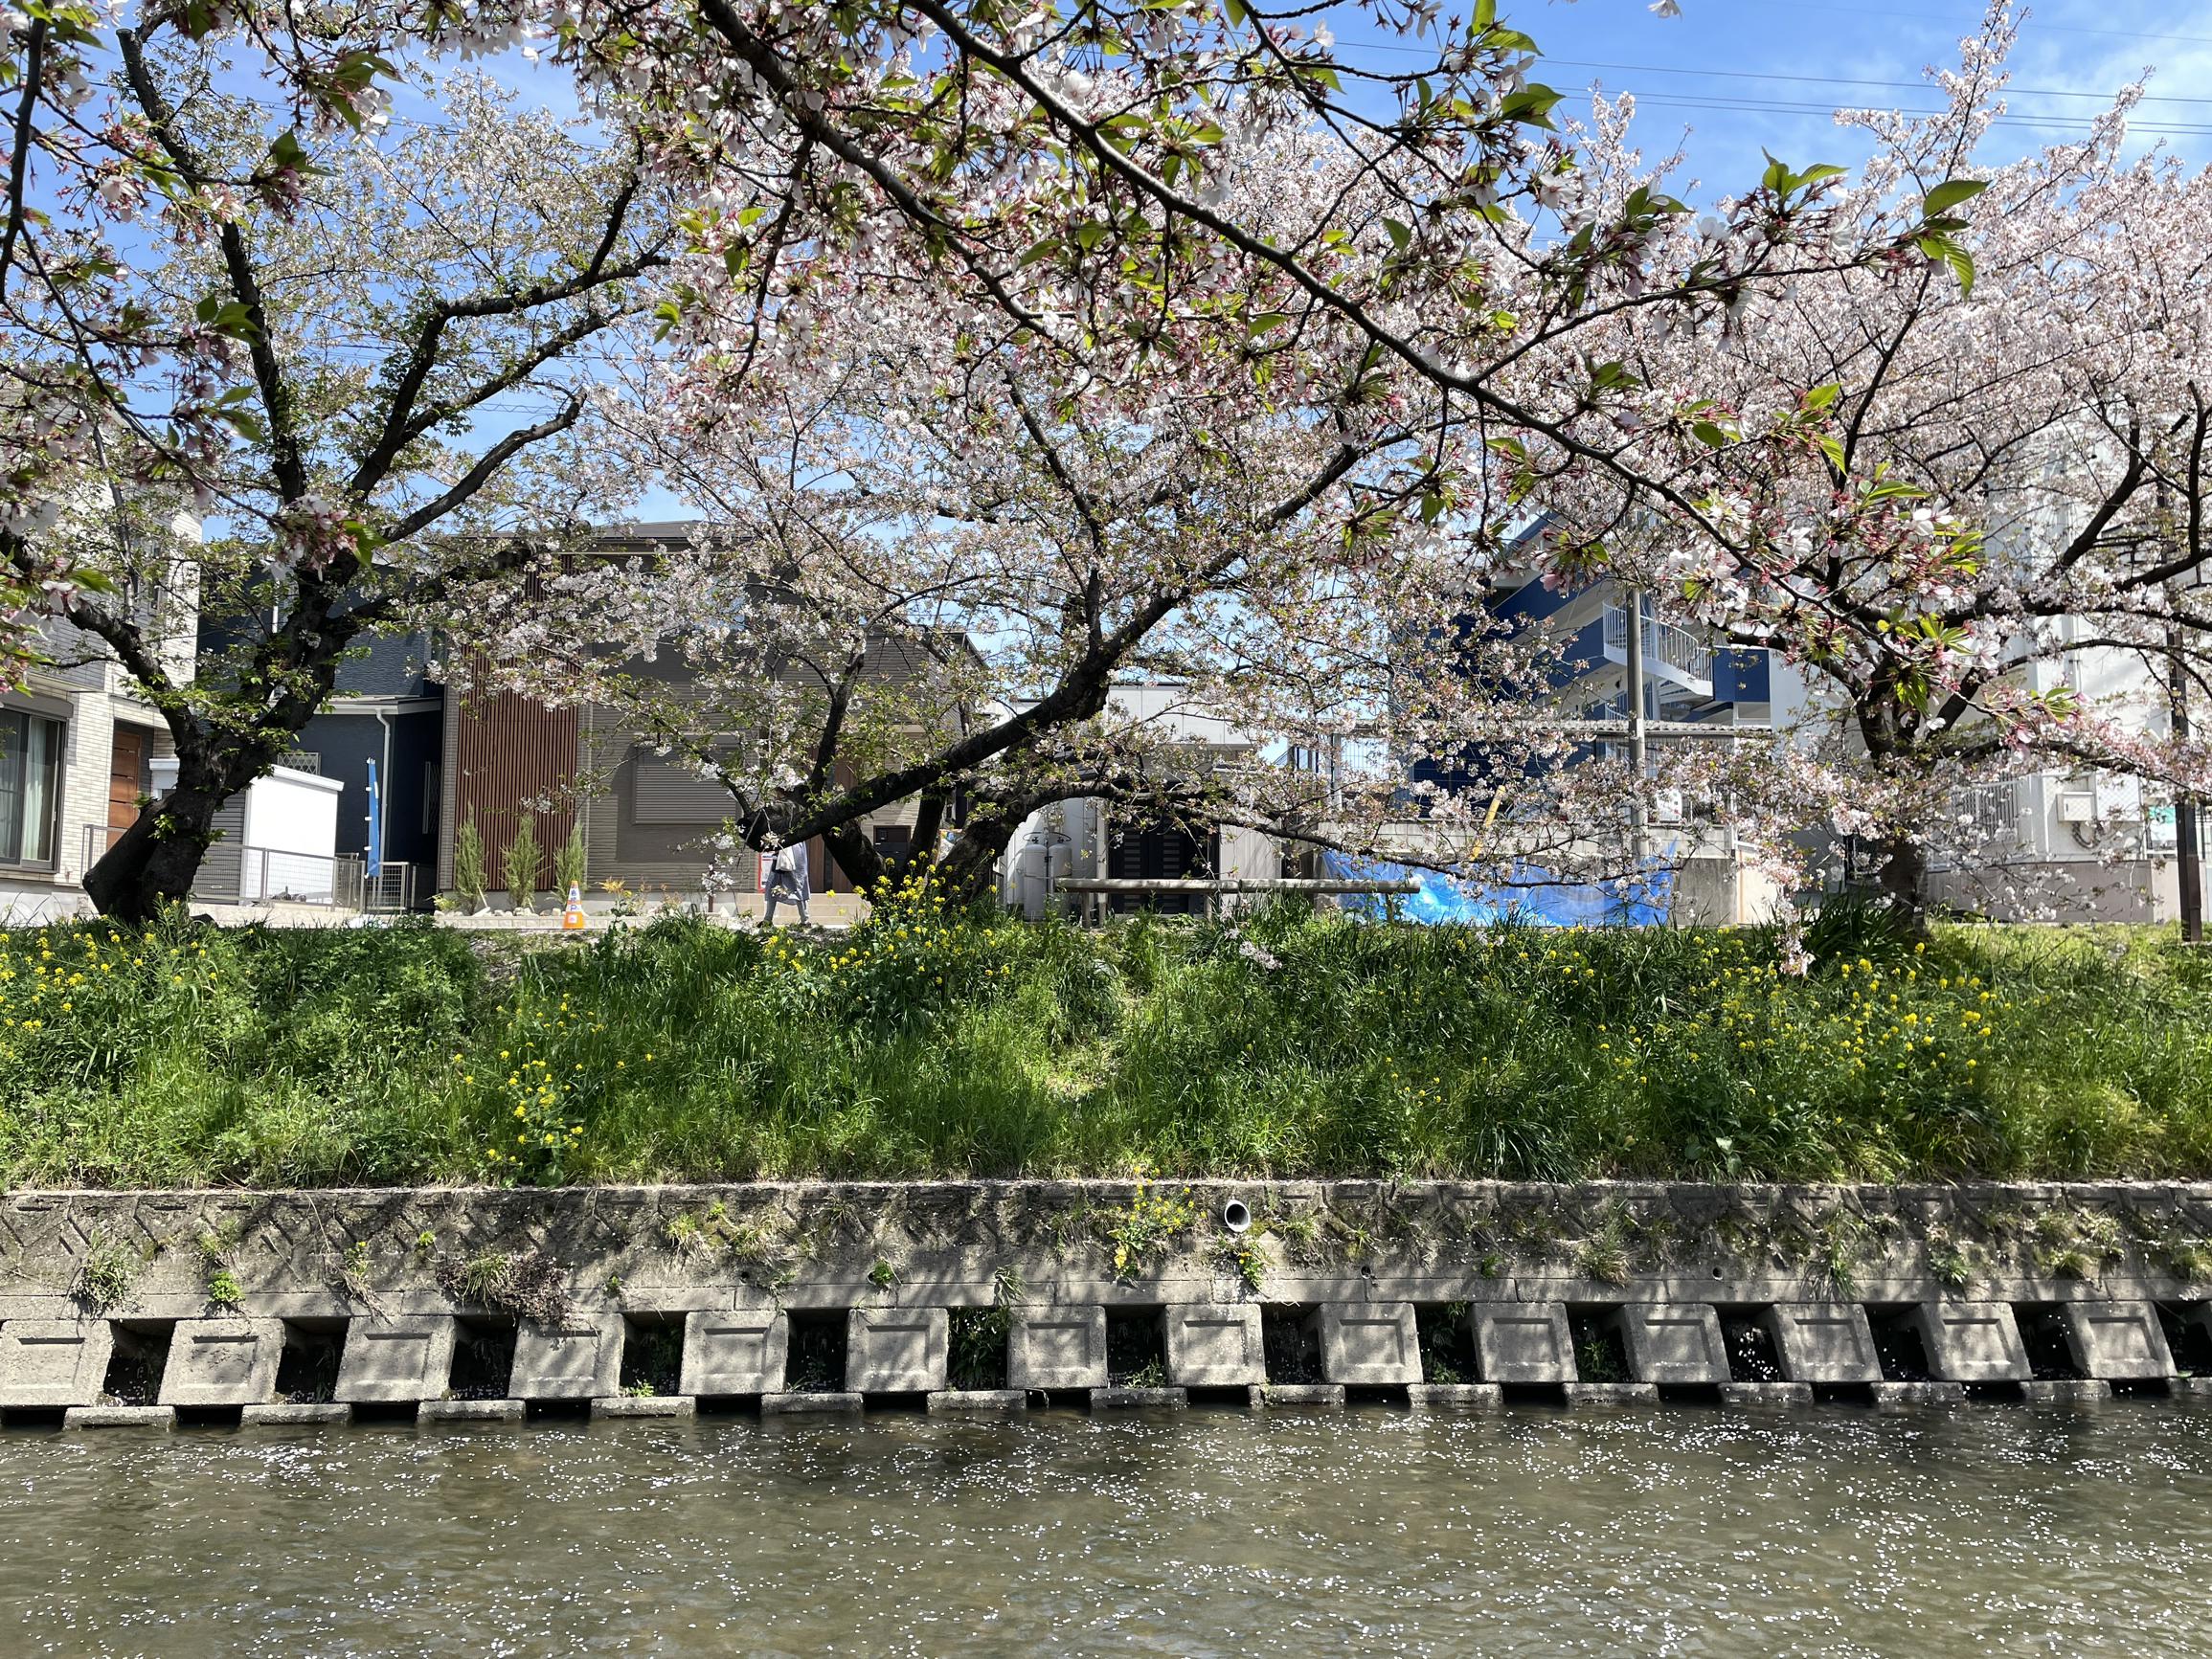 从名古屋站坐电车半个小时就能到岩仓站，五条川伊势桥附近的樱花花瓣盛开，川内片片樱花🌸跟着流淌，形成花